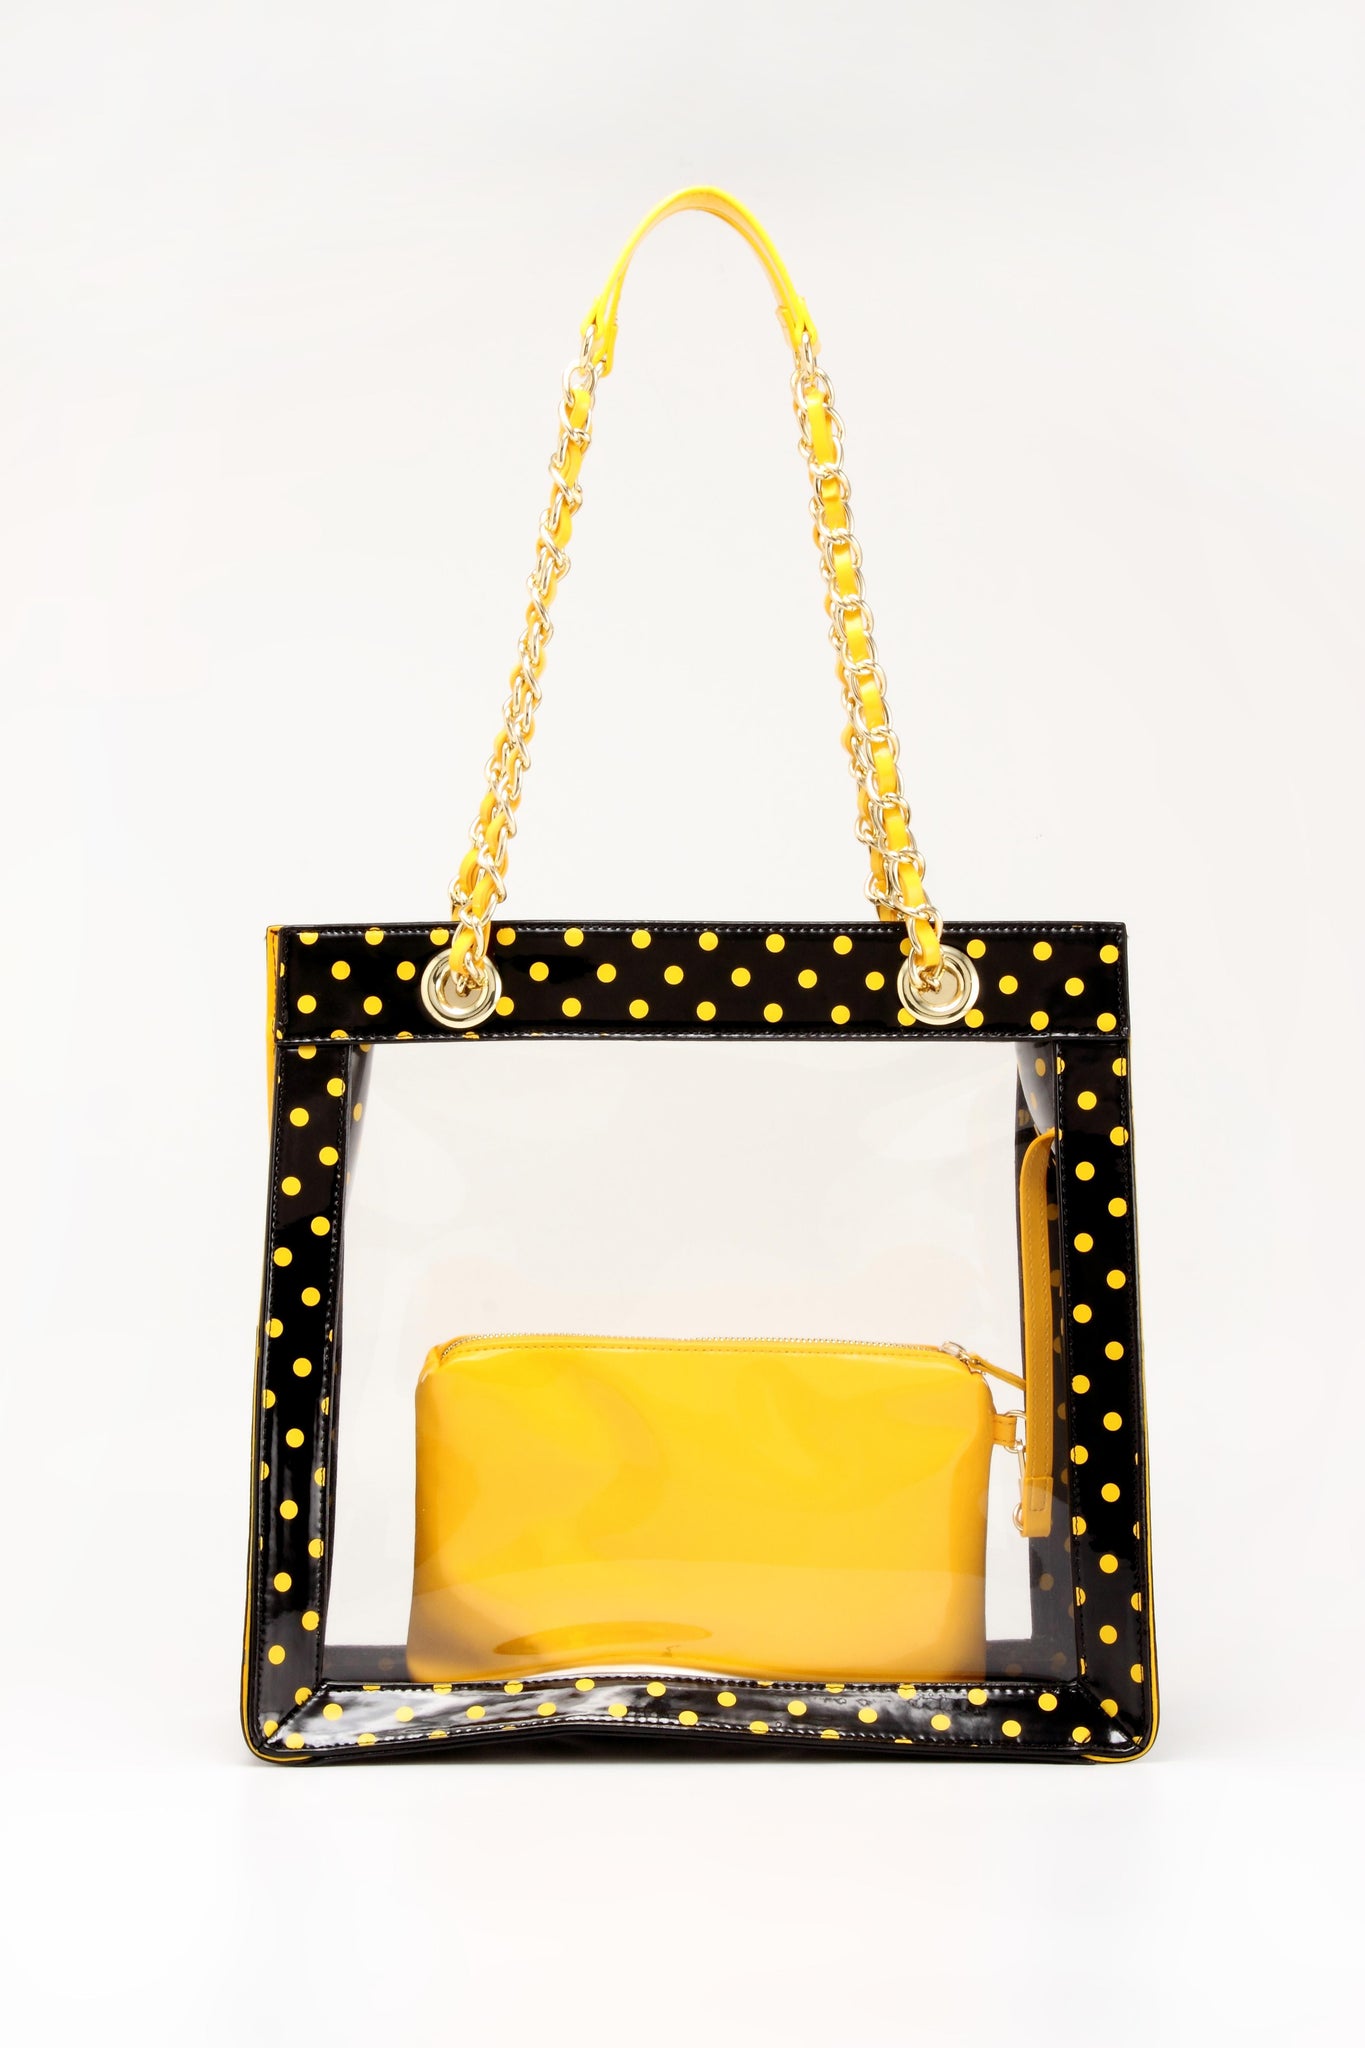 Transparent Clear Jelly Handbag Shoulder Bags for Women Elegant Evening Bag